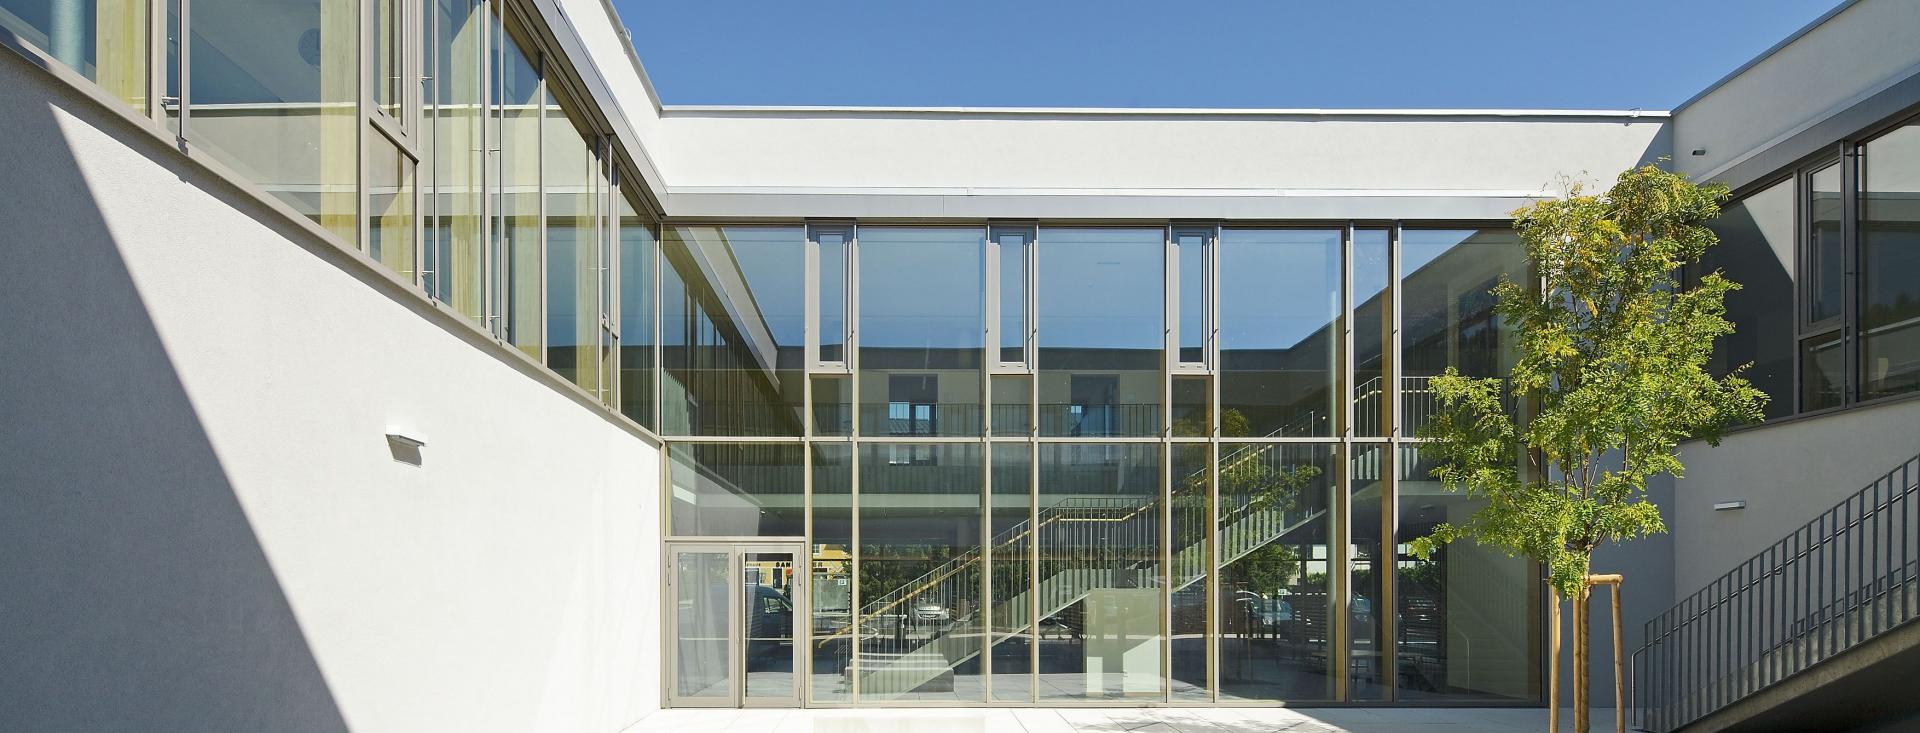 BAUMANN GLAS Volksschule Waldhausen Holz-Glas-Fassade, Foto: Rupert Steiner